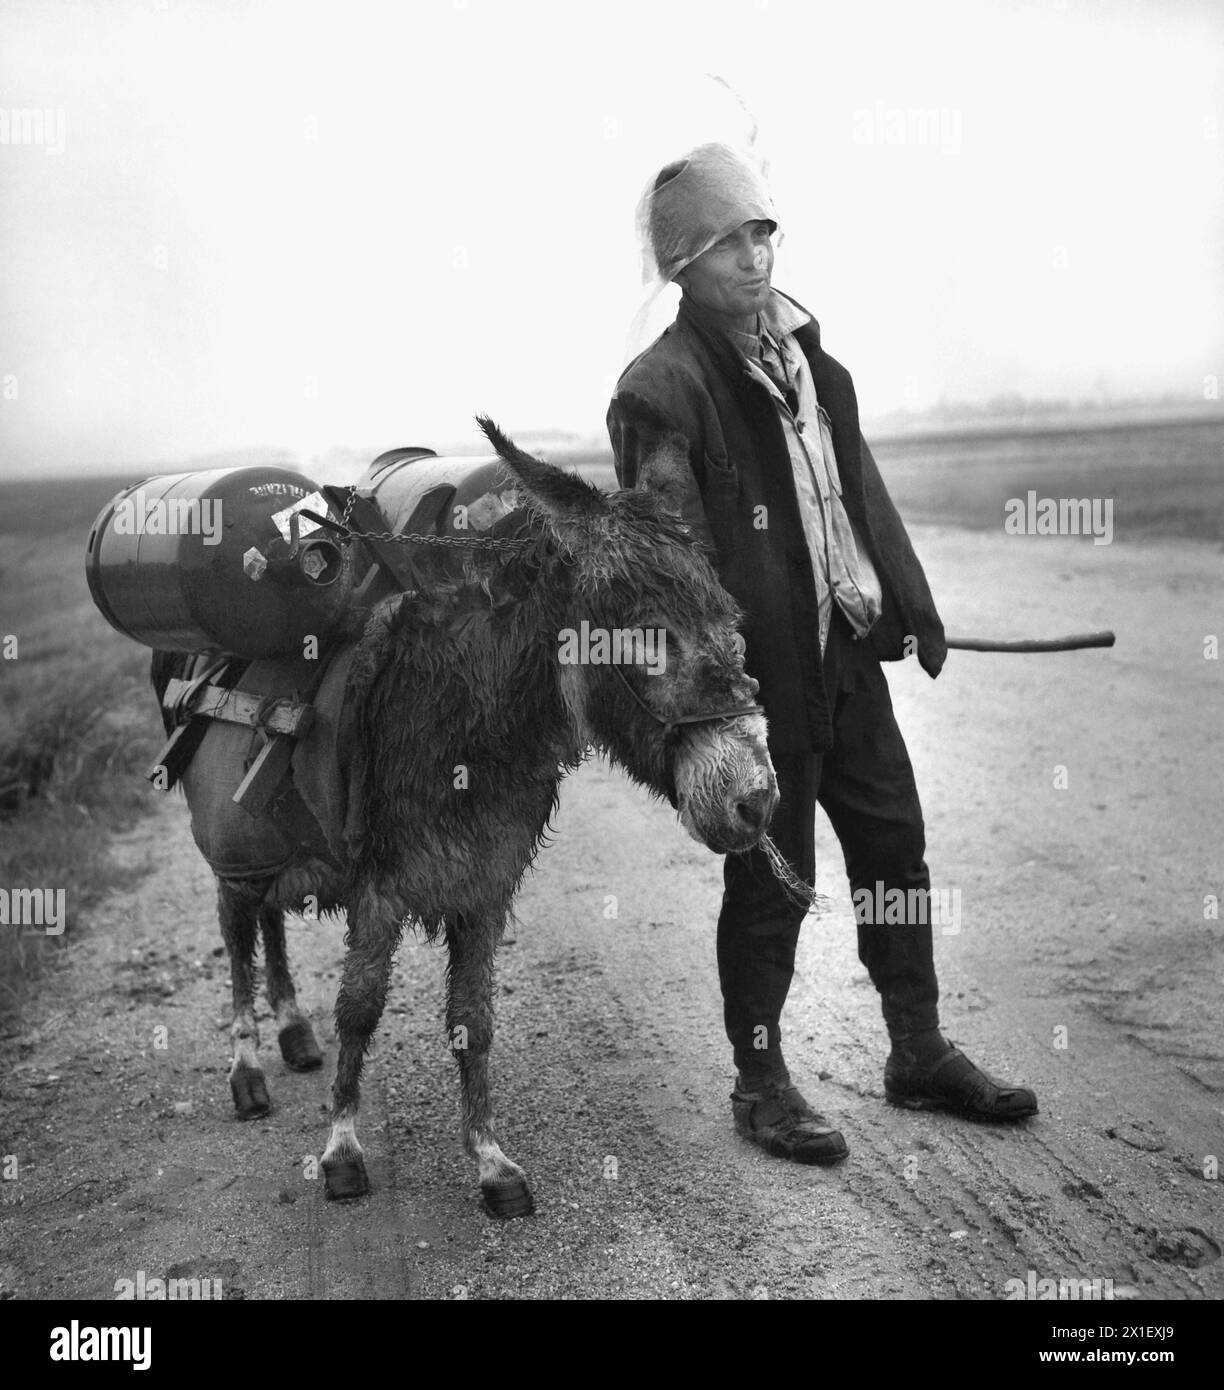 Die Sozialistische Republik Rumänien in den 1970er Jahren Mann, der zwei Propangasflaschen auf einem Esel transportiert, im Regen, auf einer unbefestigten, matschigen Straße im Land. Stockfoto